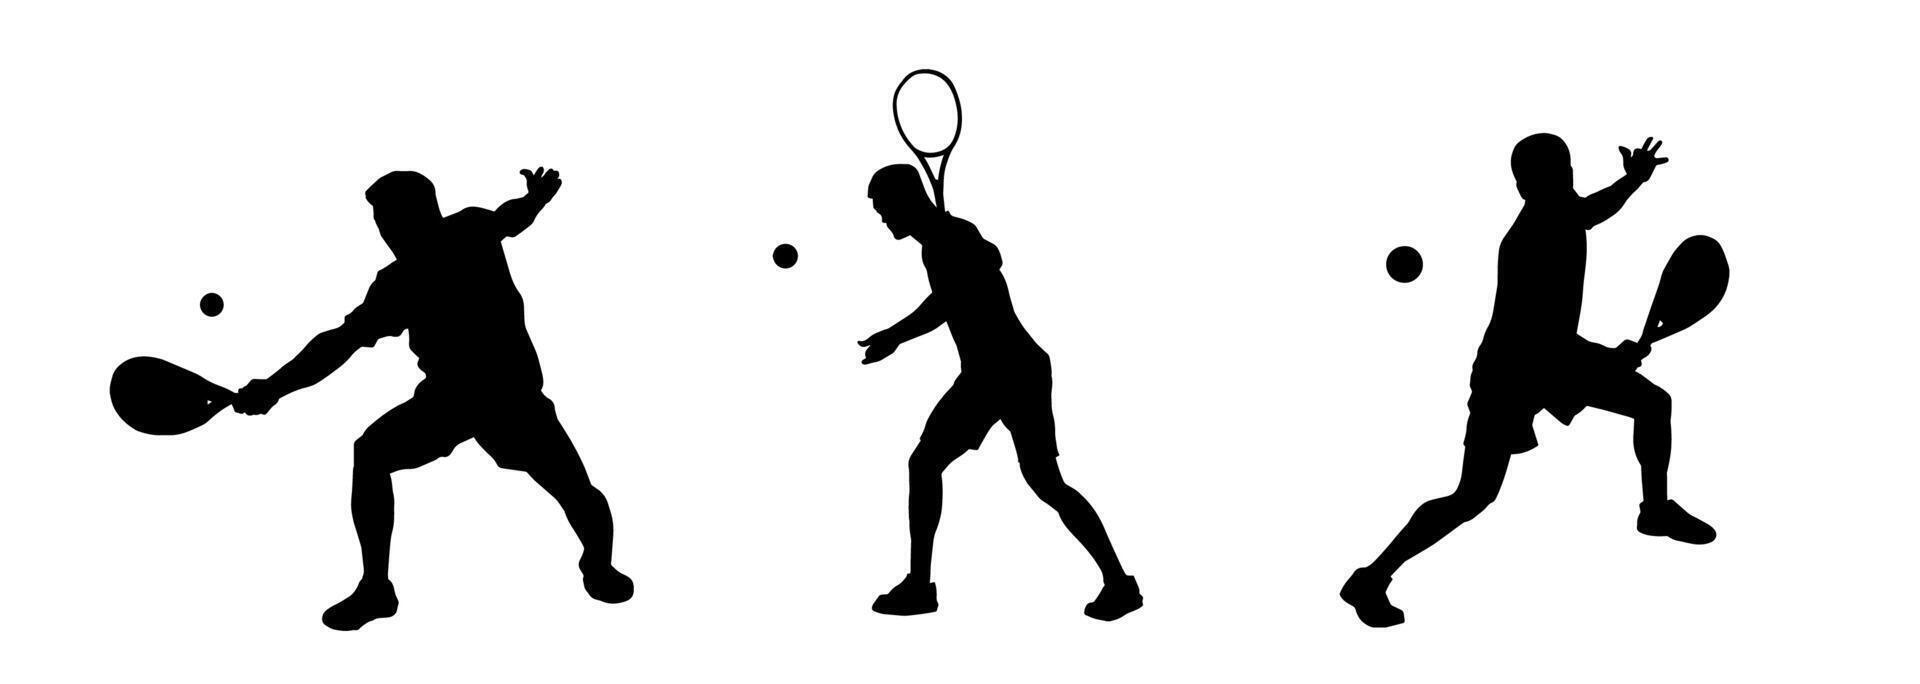 silhouette groupe de Masculin tennis joueurs dans action pose porter raquette vecteur